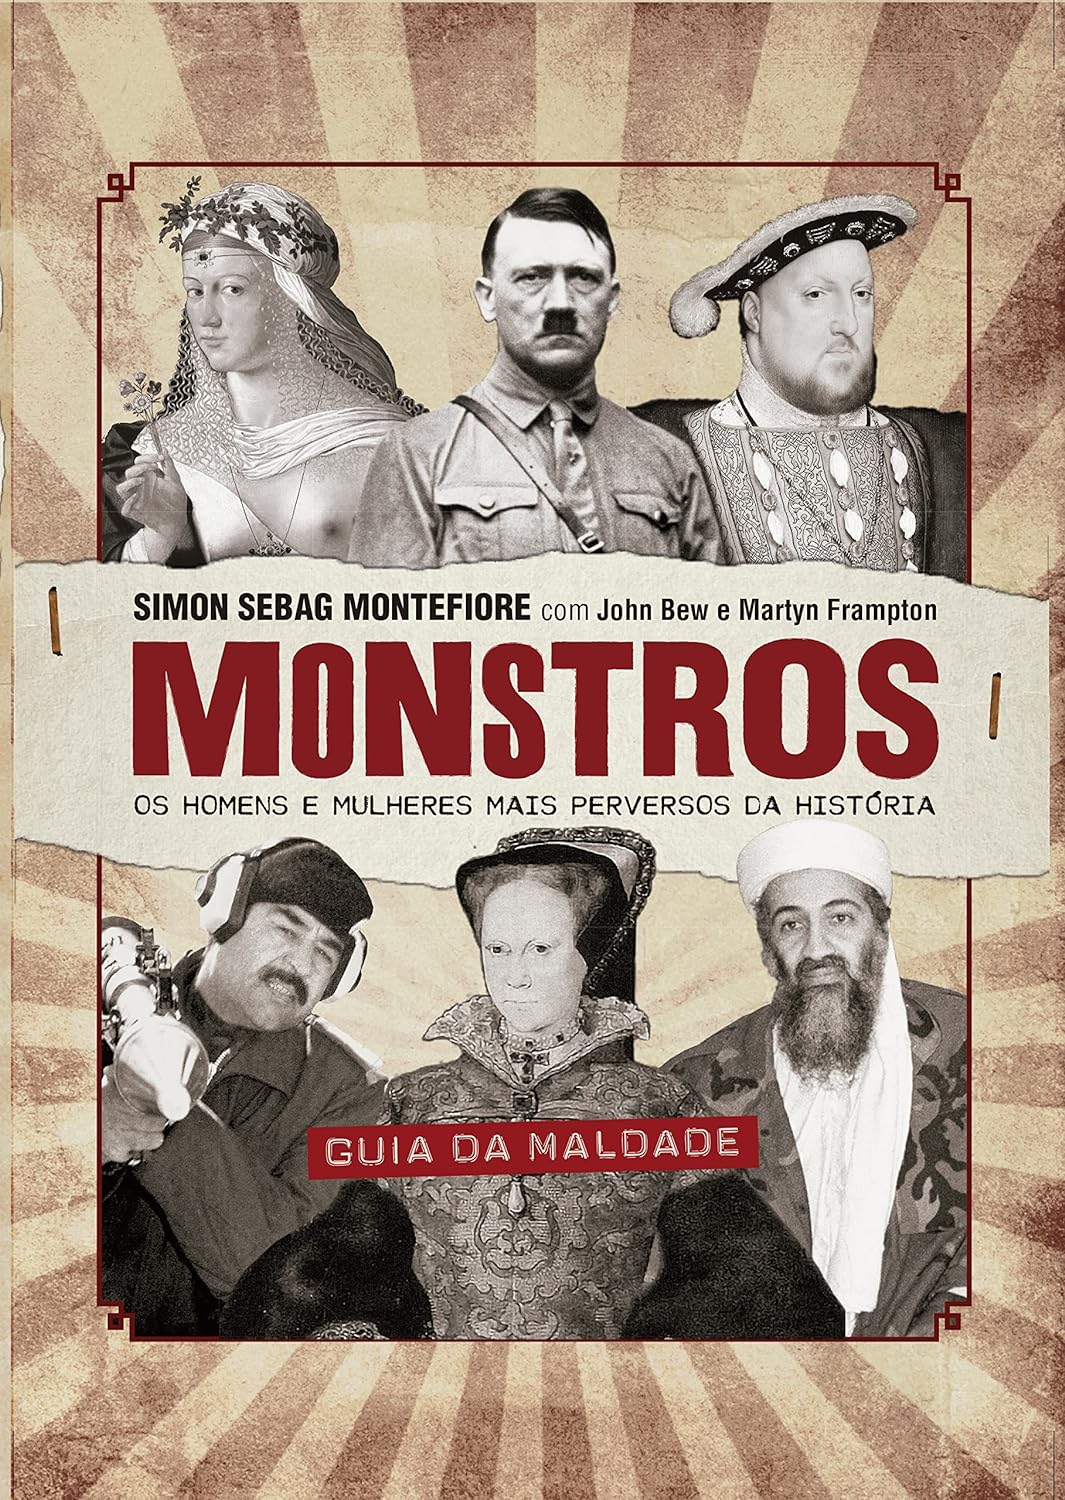 Monstros - Os homens e mulheres mais perversos da história - Simon Sebag Montefiore